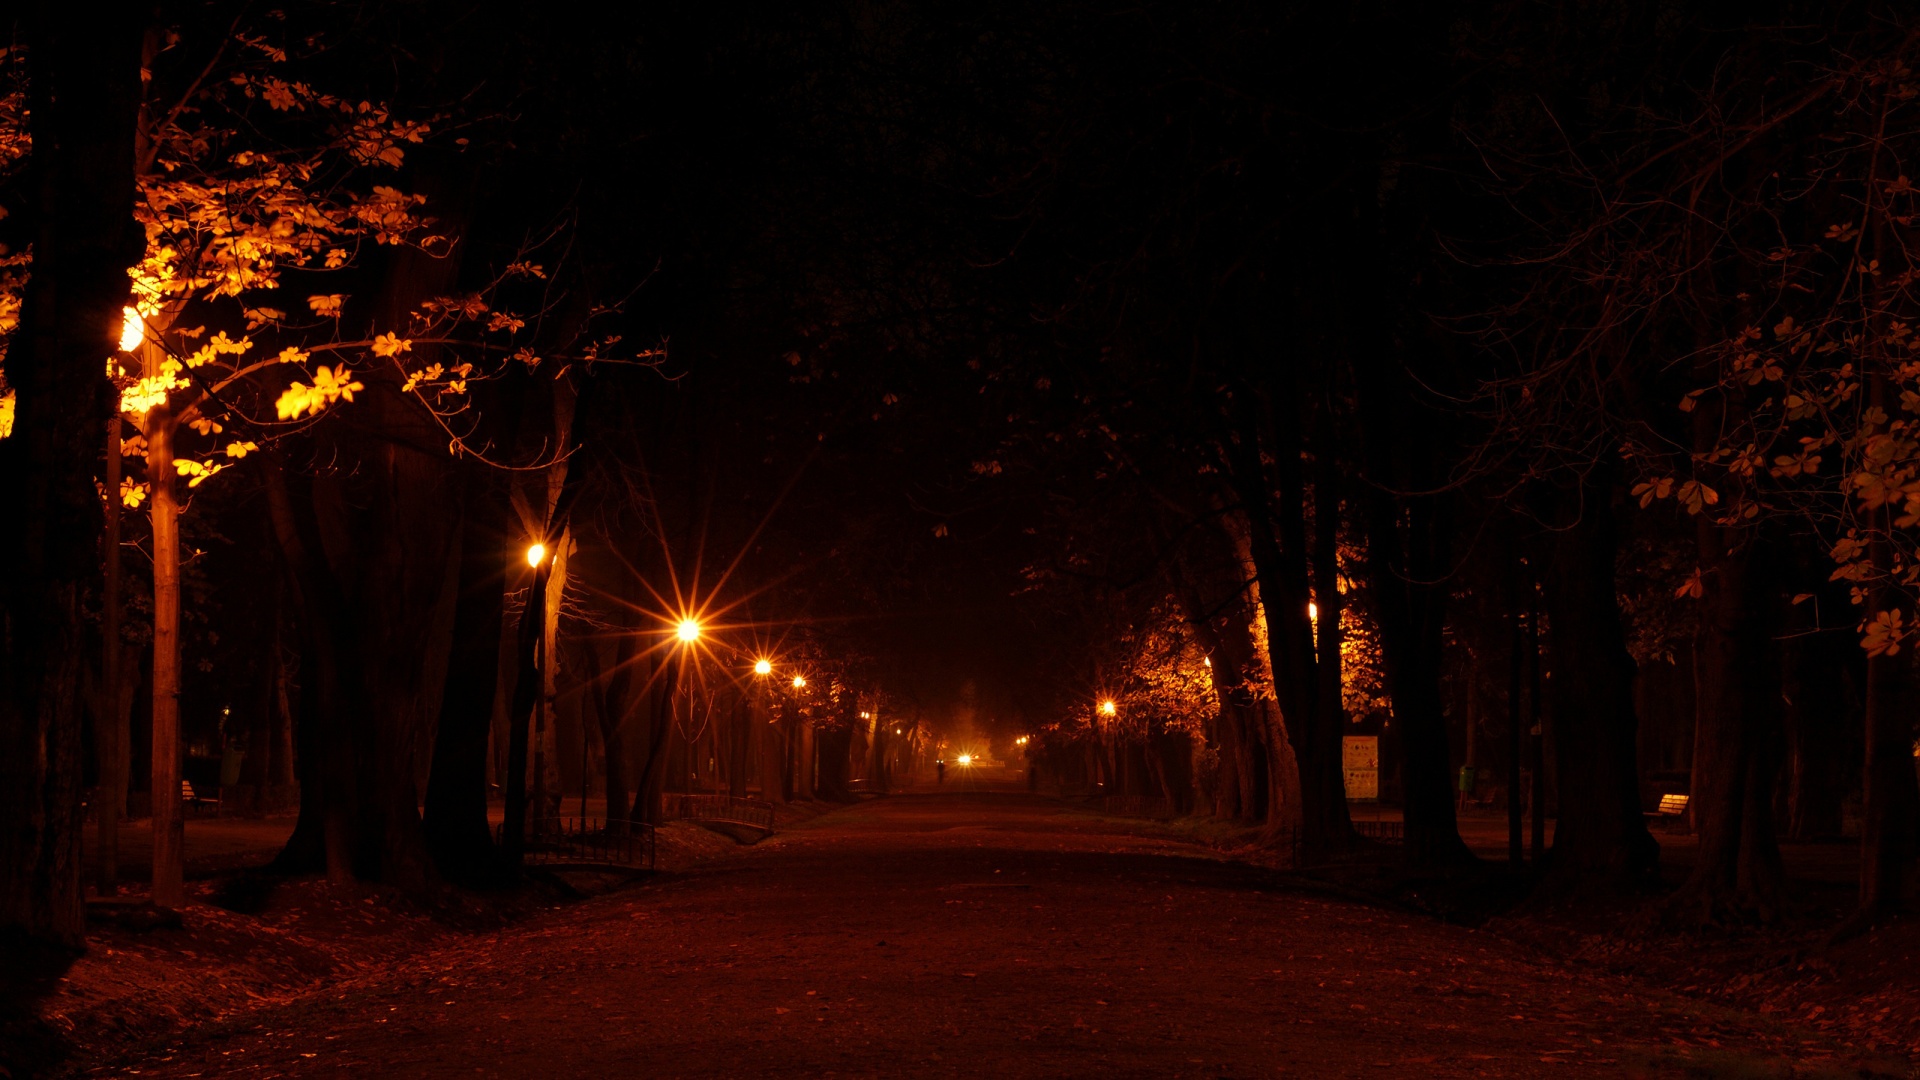  街道 树 灯 晚上浪漫的小巷道路风景桌面壁纸